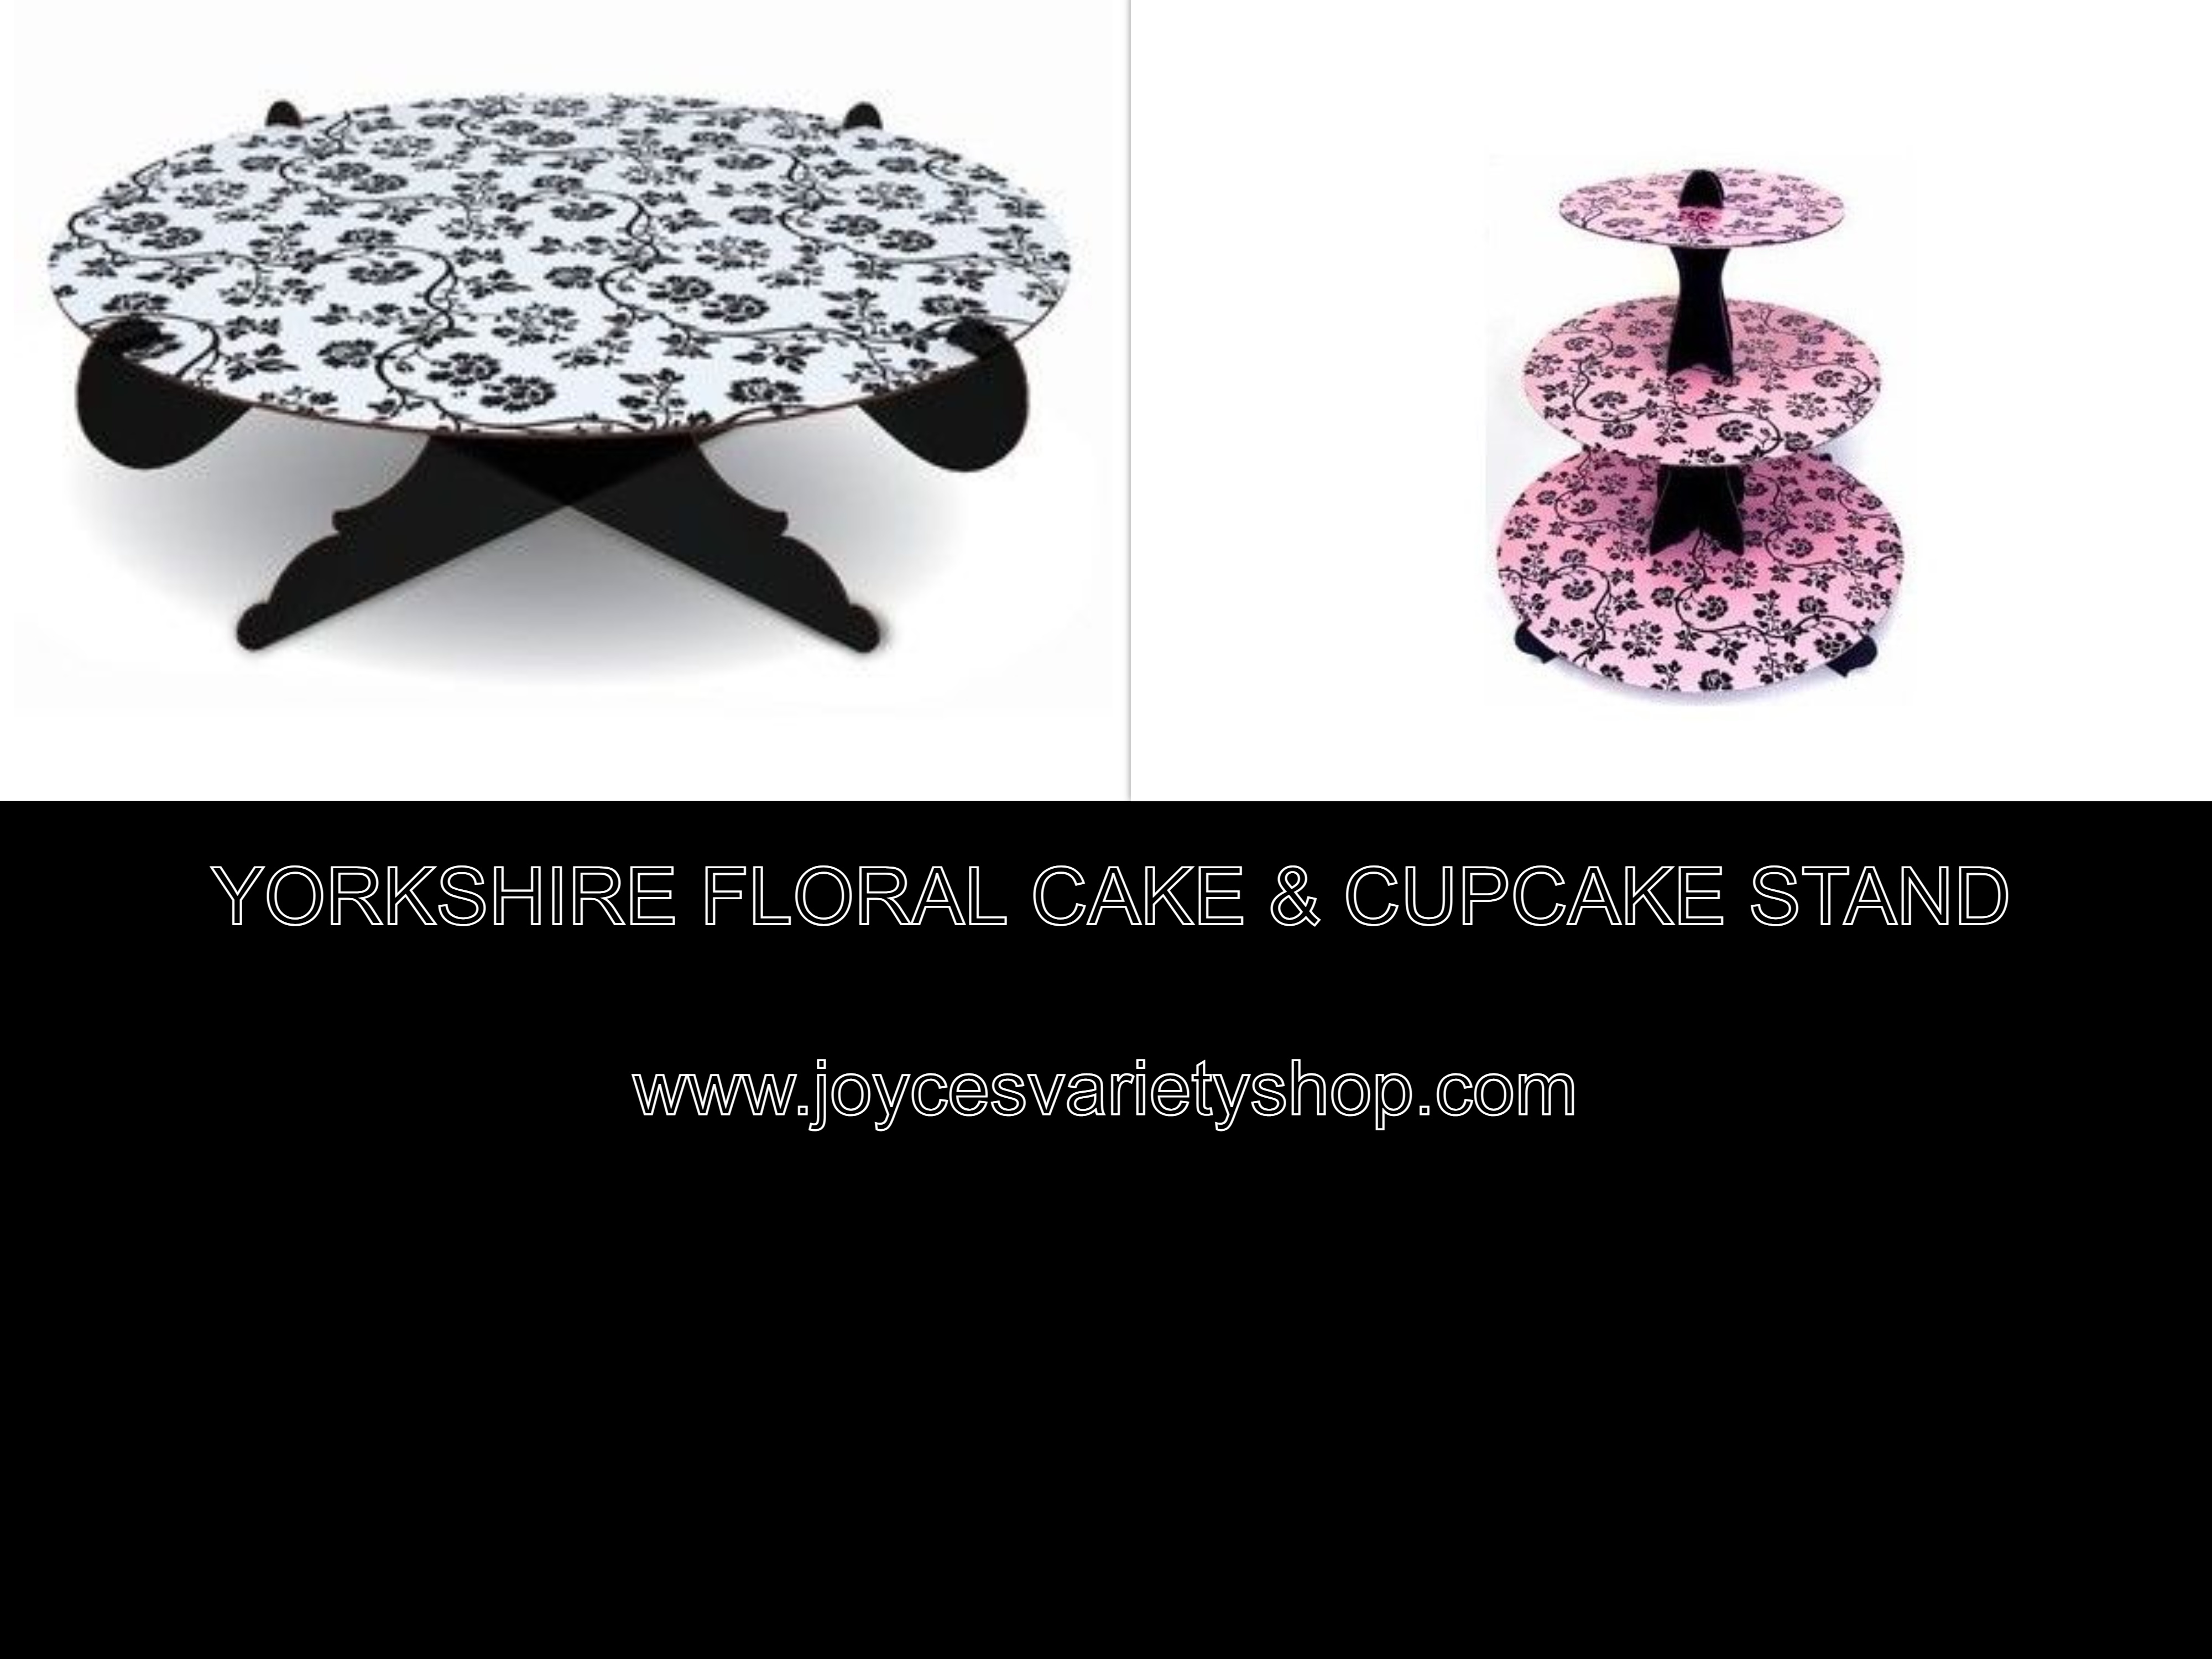 Salter Kitchen Cake & Cupcake Stands Yorkshire Floral Design Set (2)